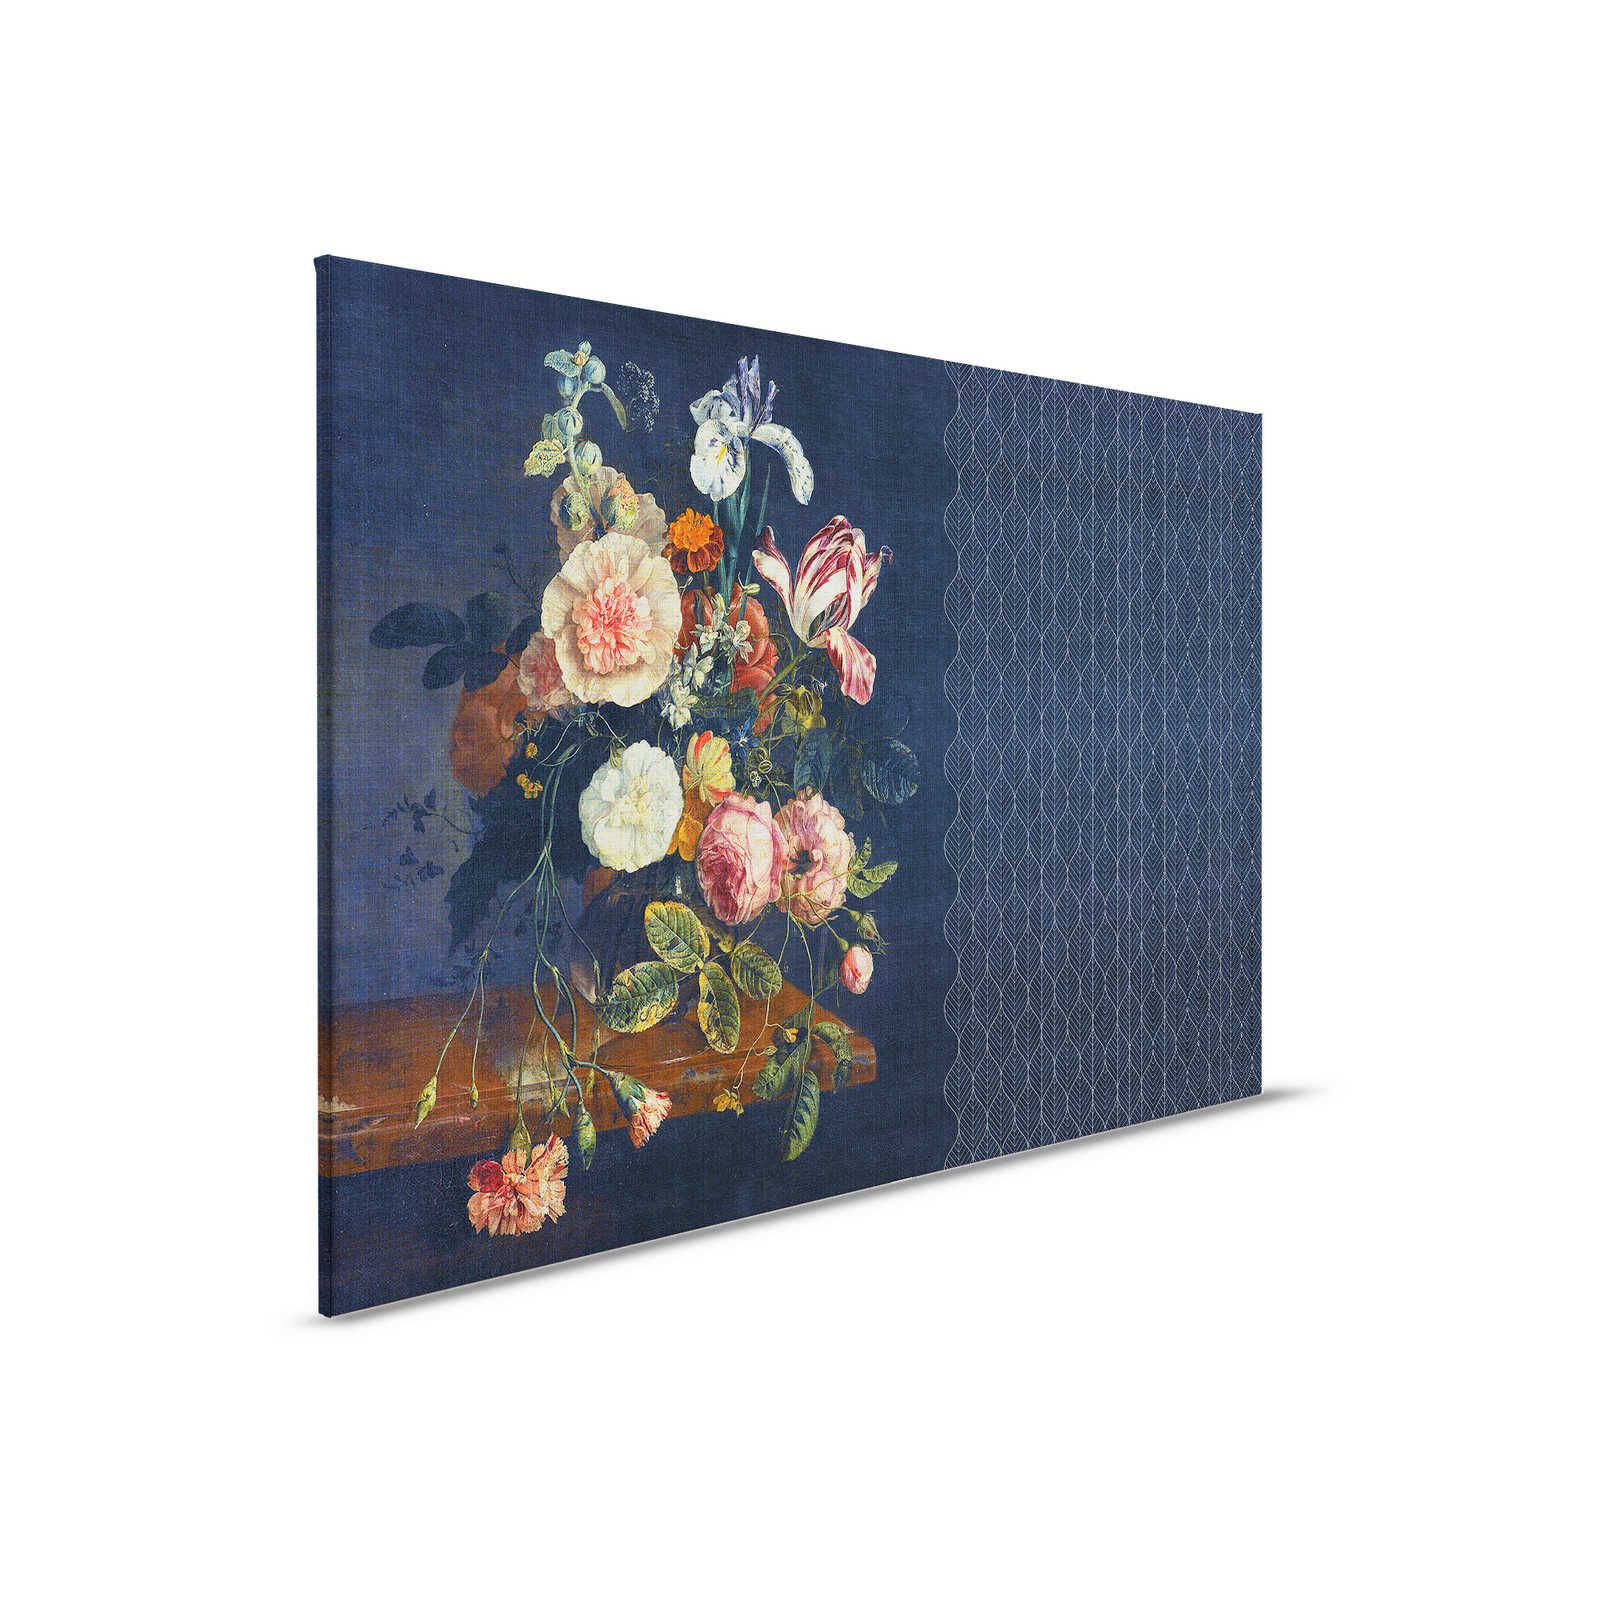 Cortina 2 - Lienzo azul oscuro motivo Art Déco con ramo de flores - 0,90 m x 0,60 m
